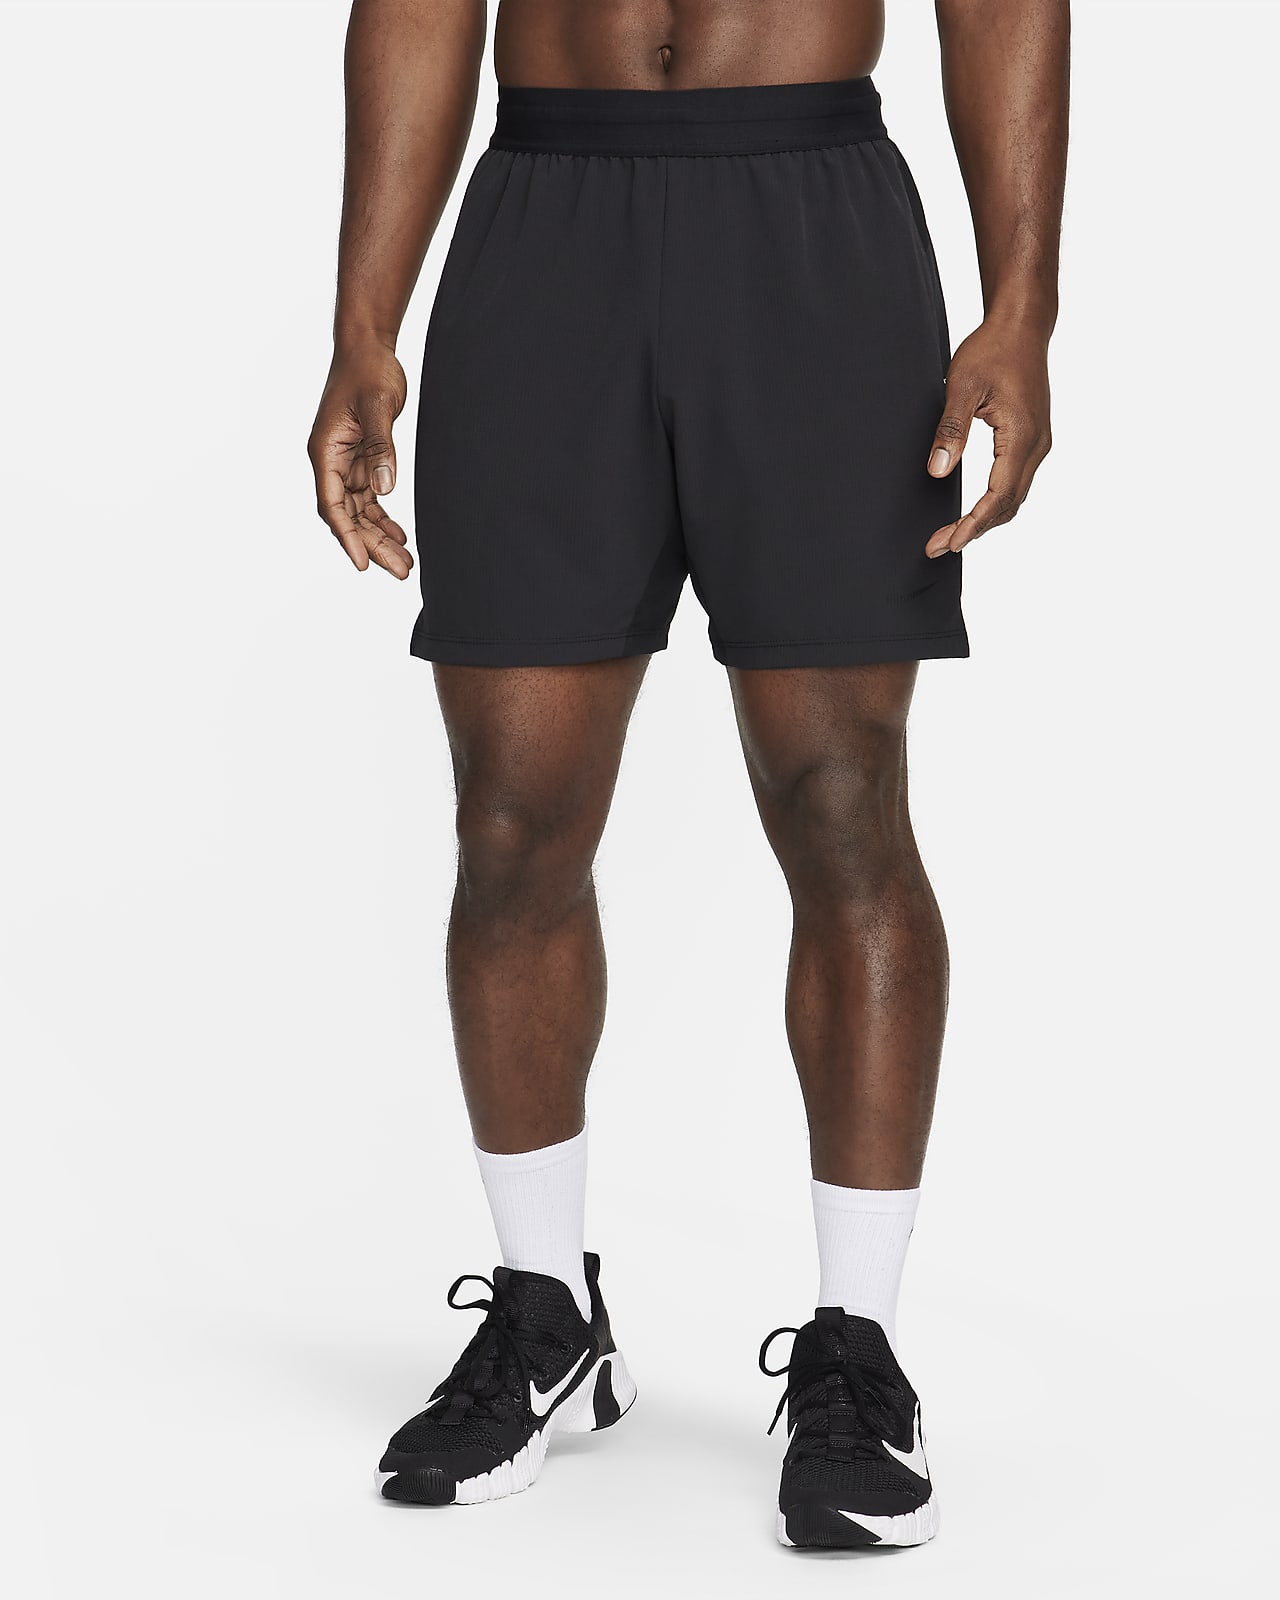 Nike Flex Rep 4.0 Dri-FIT-fitnessshorts uden for (17 cm) til mænd 